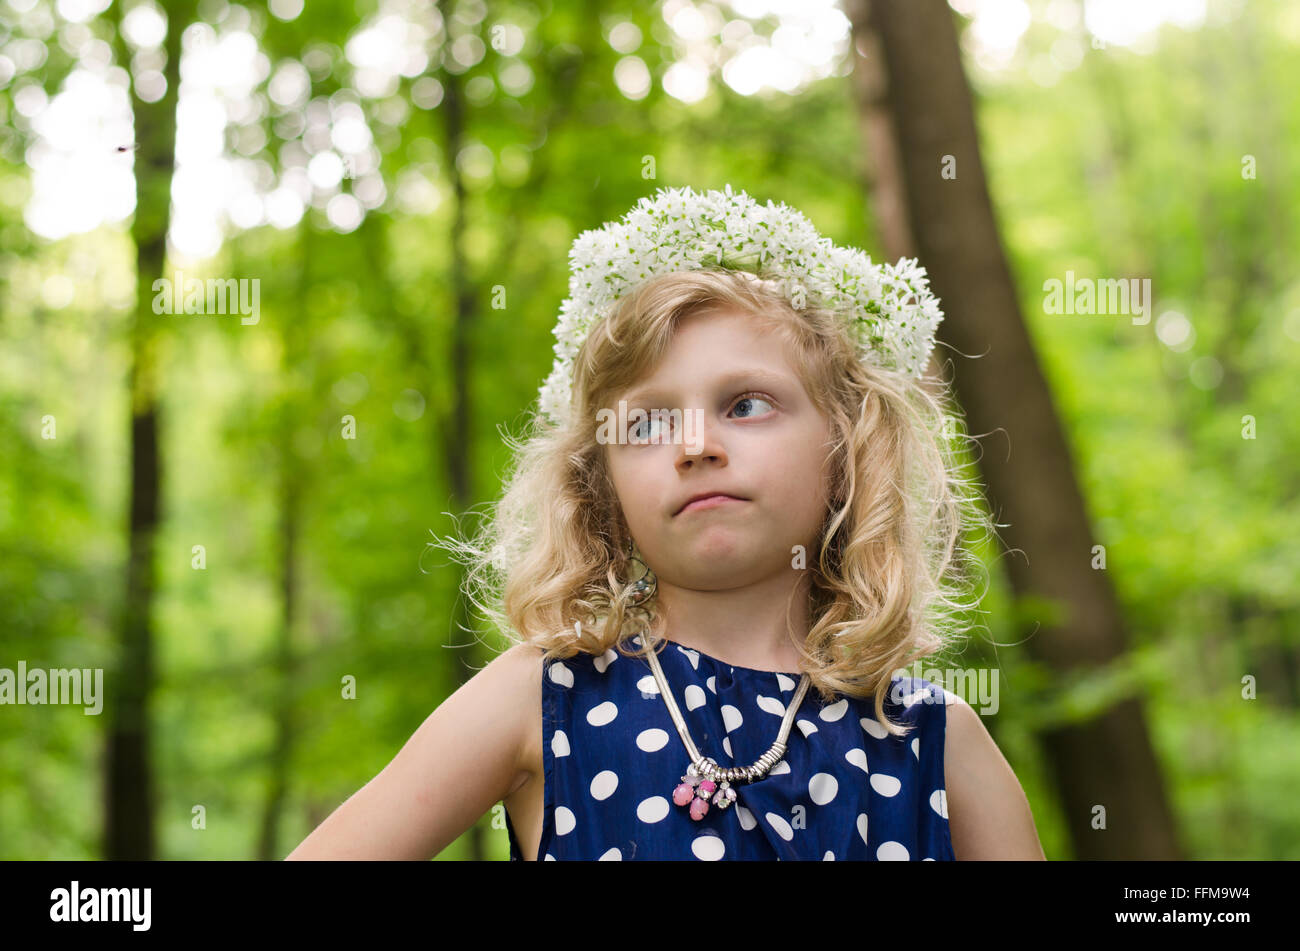 Adorabile ragazza bionda con fiori di colore bianco sopra la testa nel verde dei boschi Foto Stock